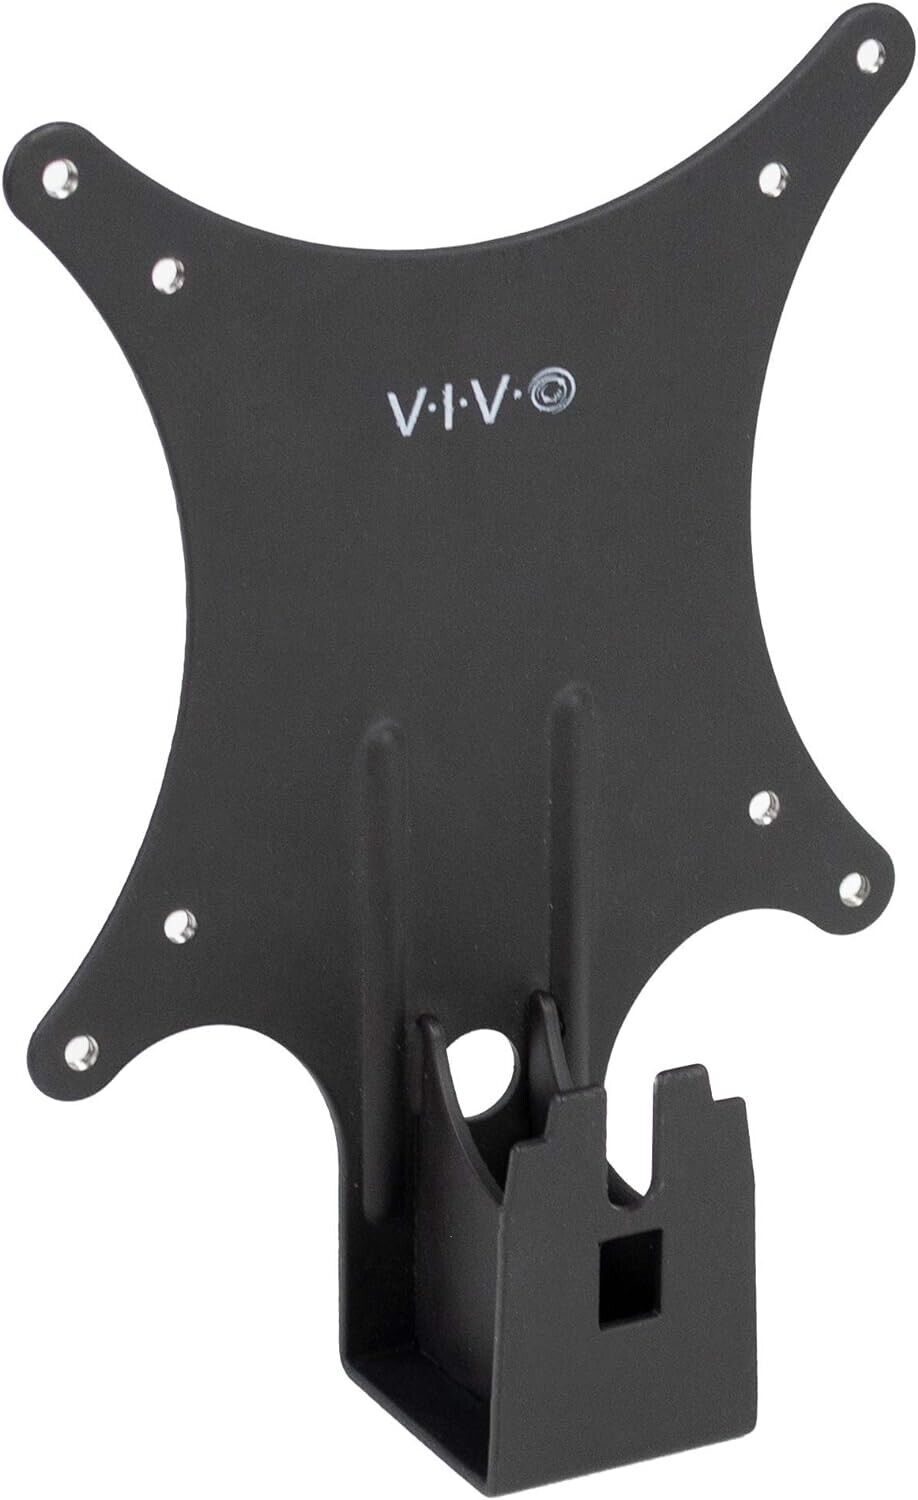 VIVO Quick Attach VESA Adapter Plate Bracket For Dell Monitors-DLS024